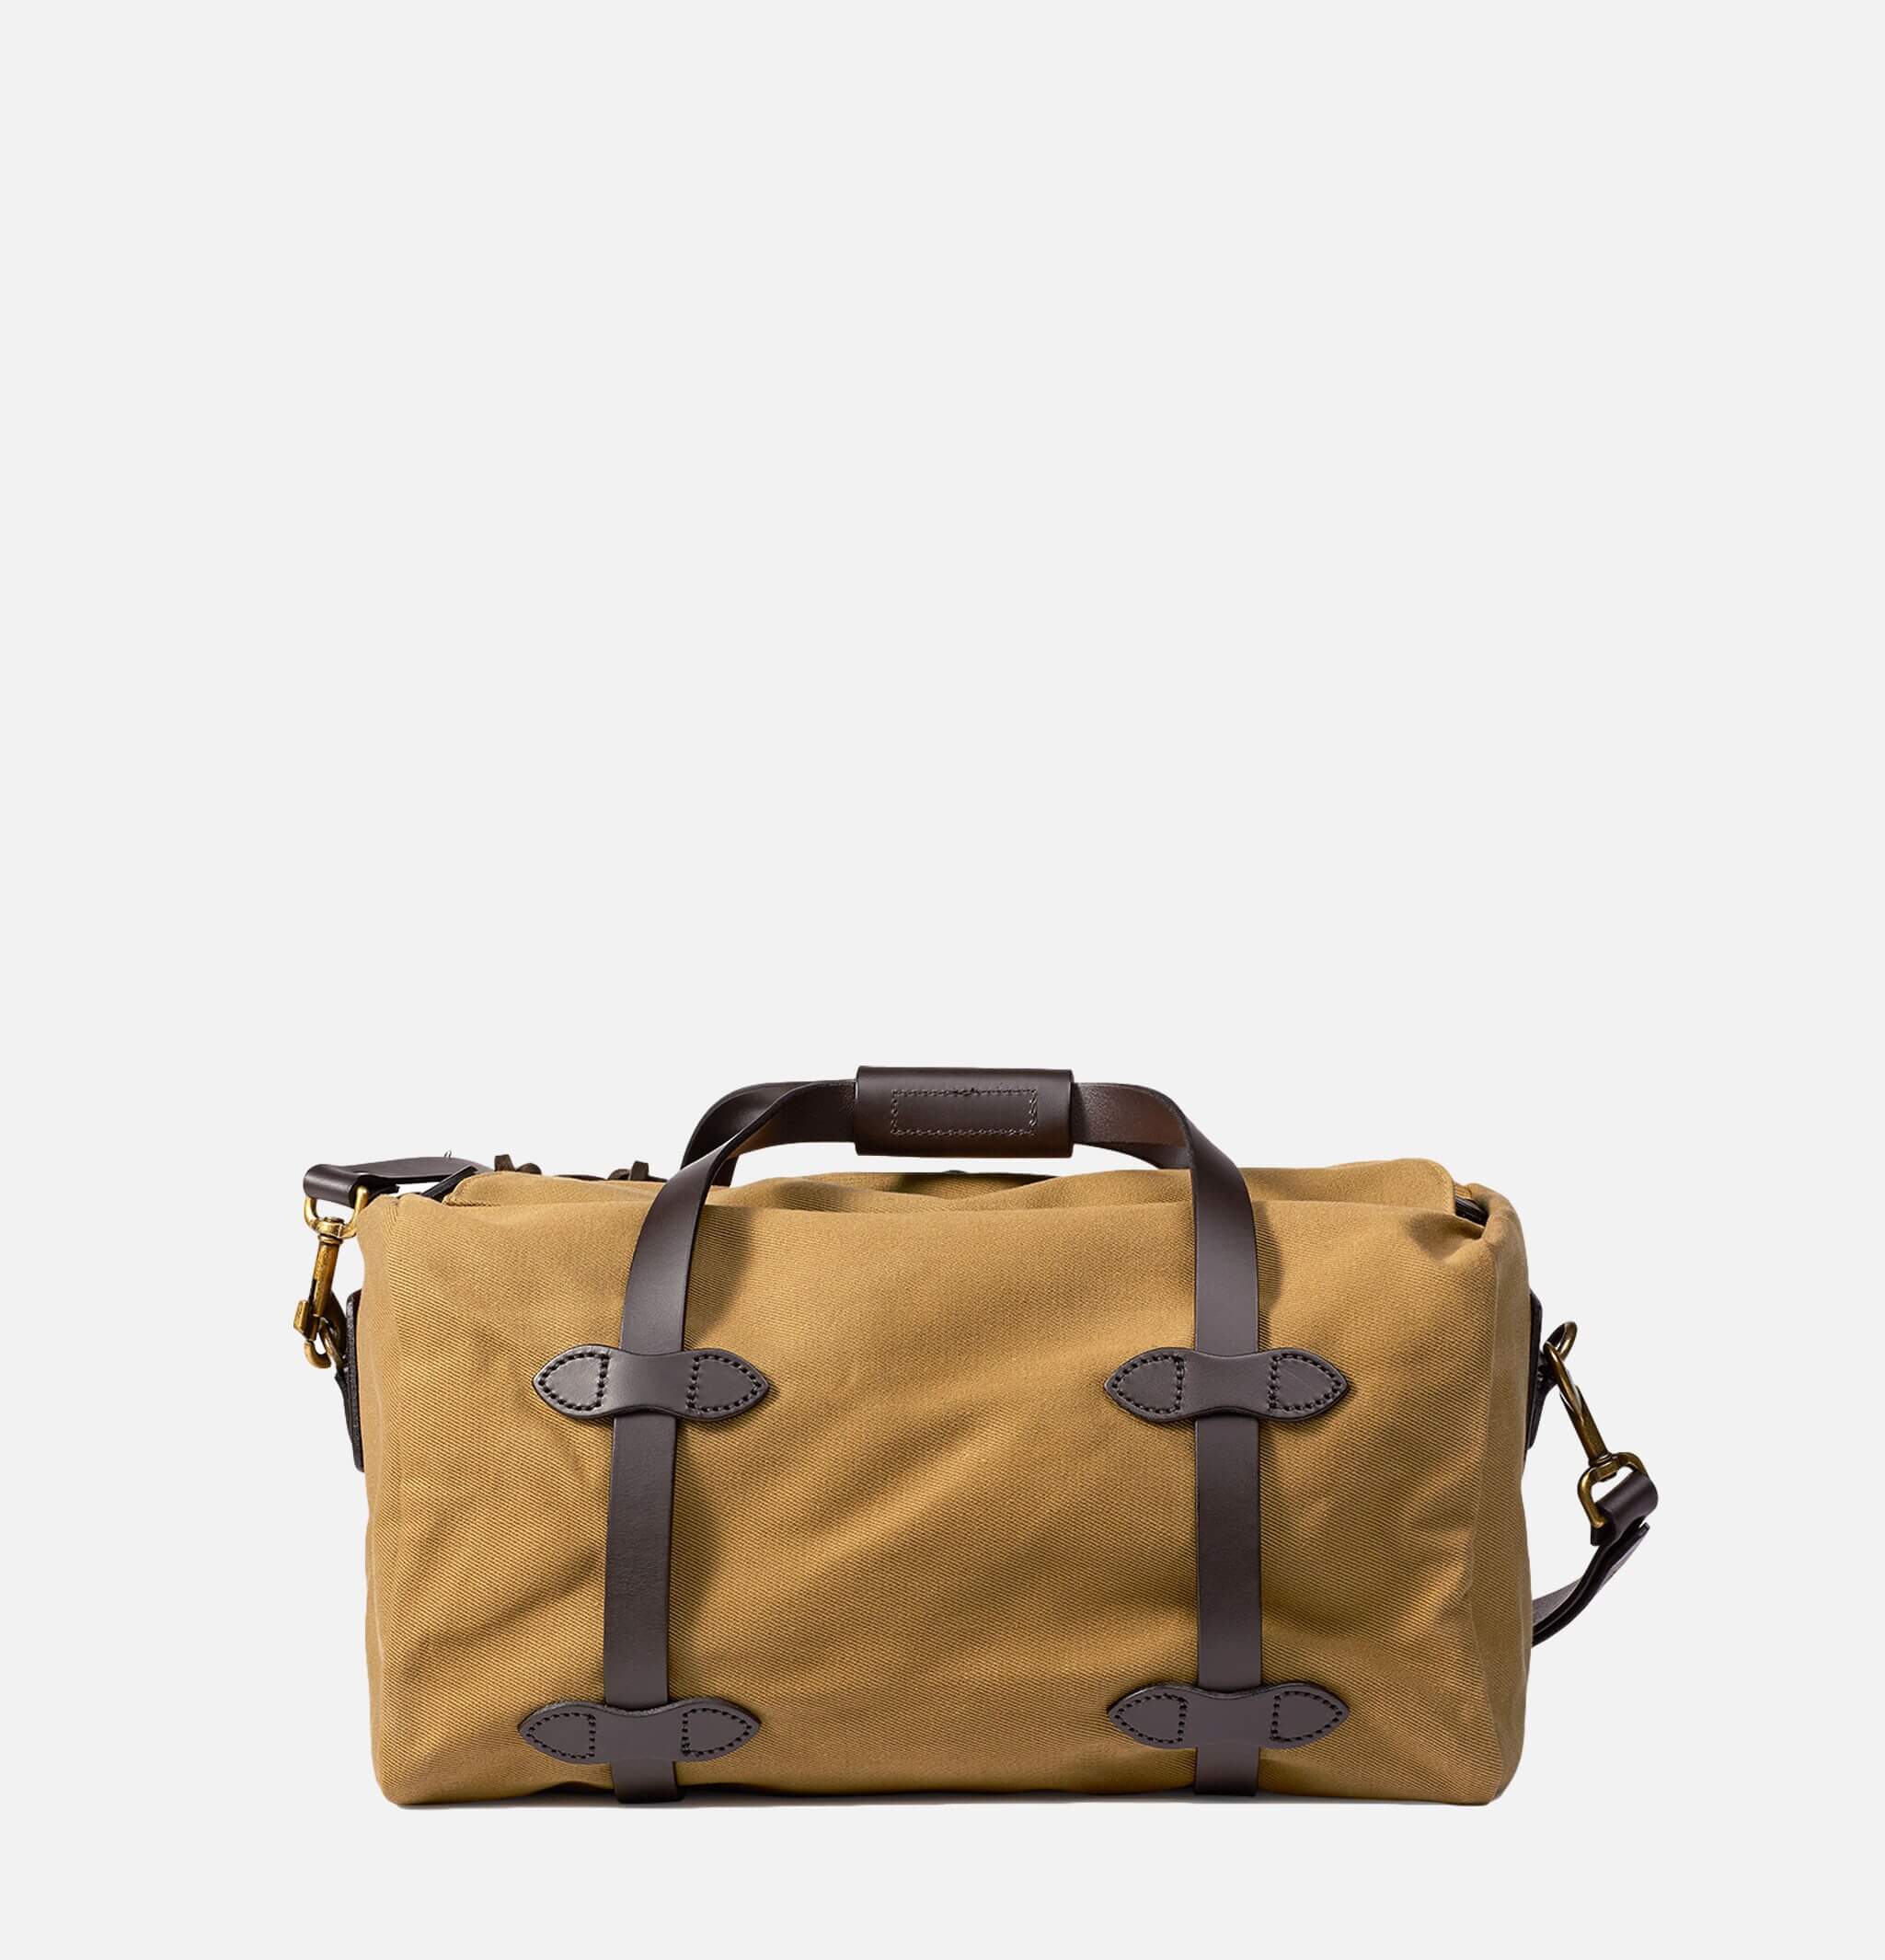 70220 - Small Duffle Bag Tan